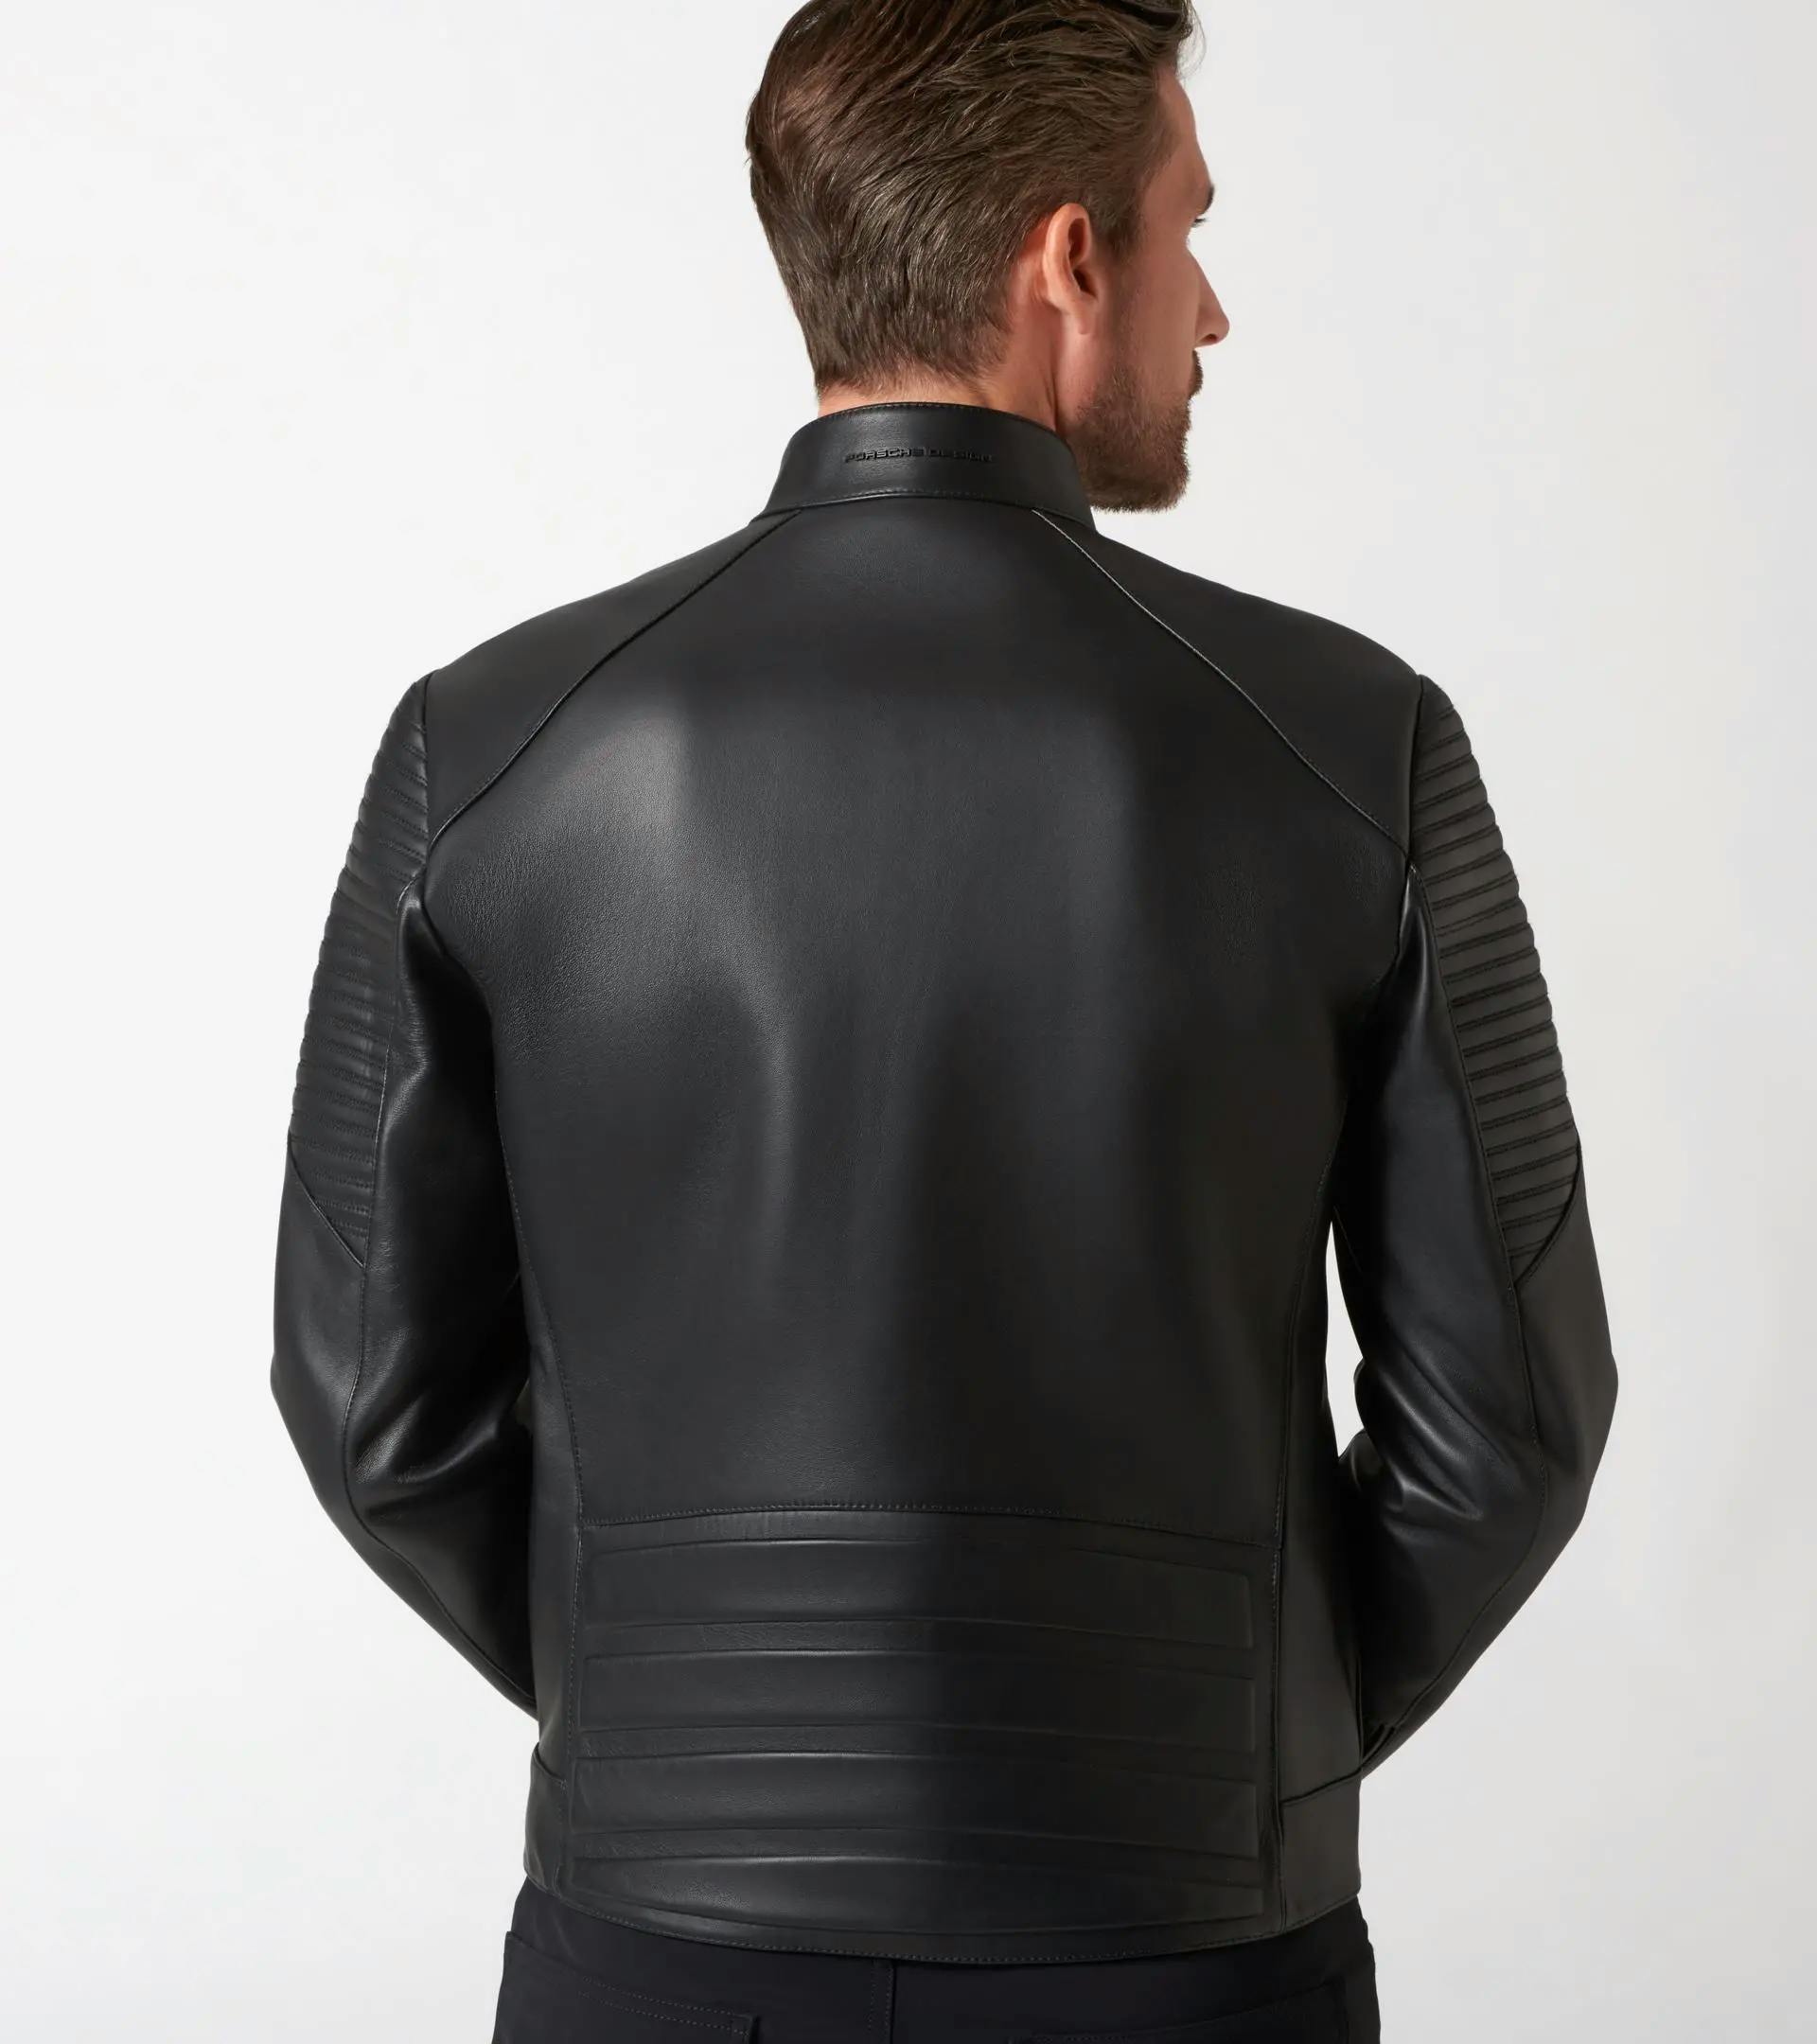 Asymmetric Zip MotoX Leather Jacket   PORSCHE SHOP